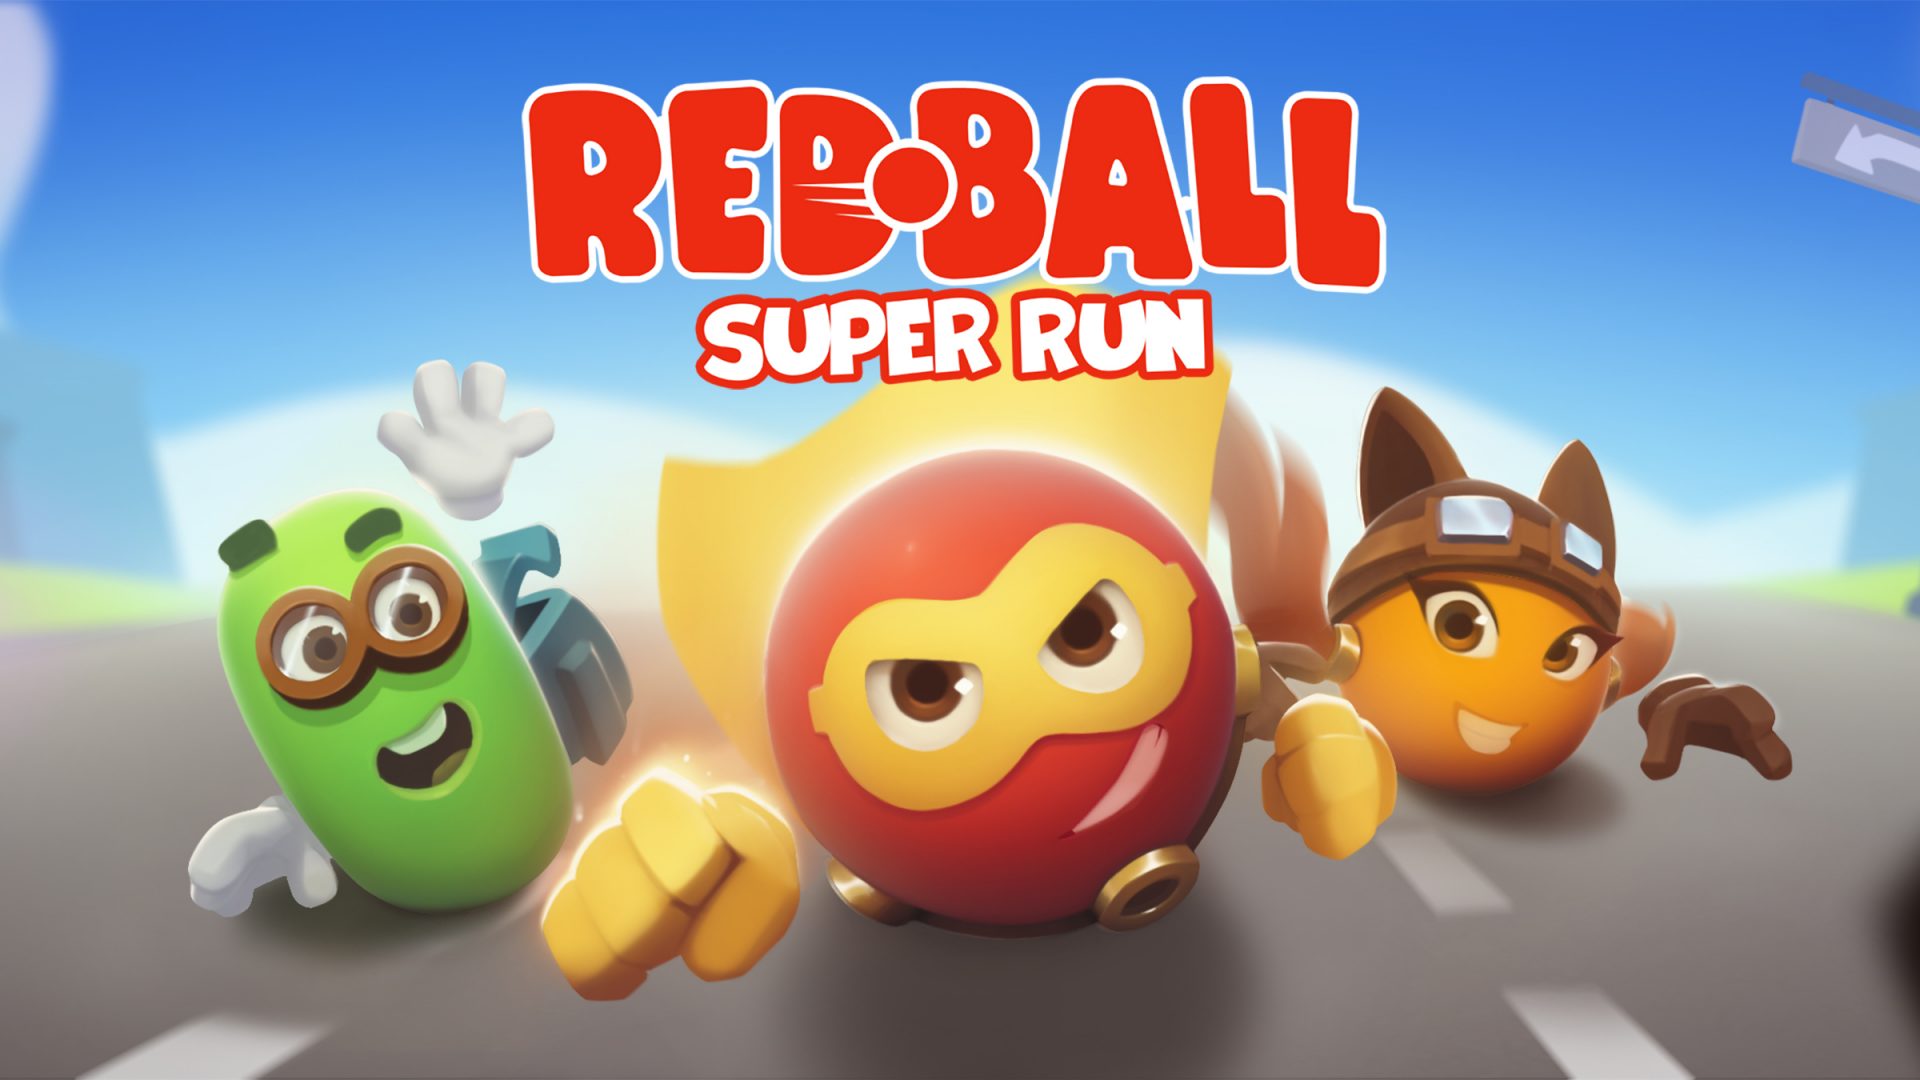 Red Ball Super Run